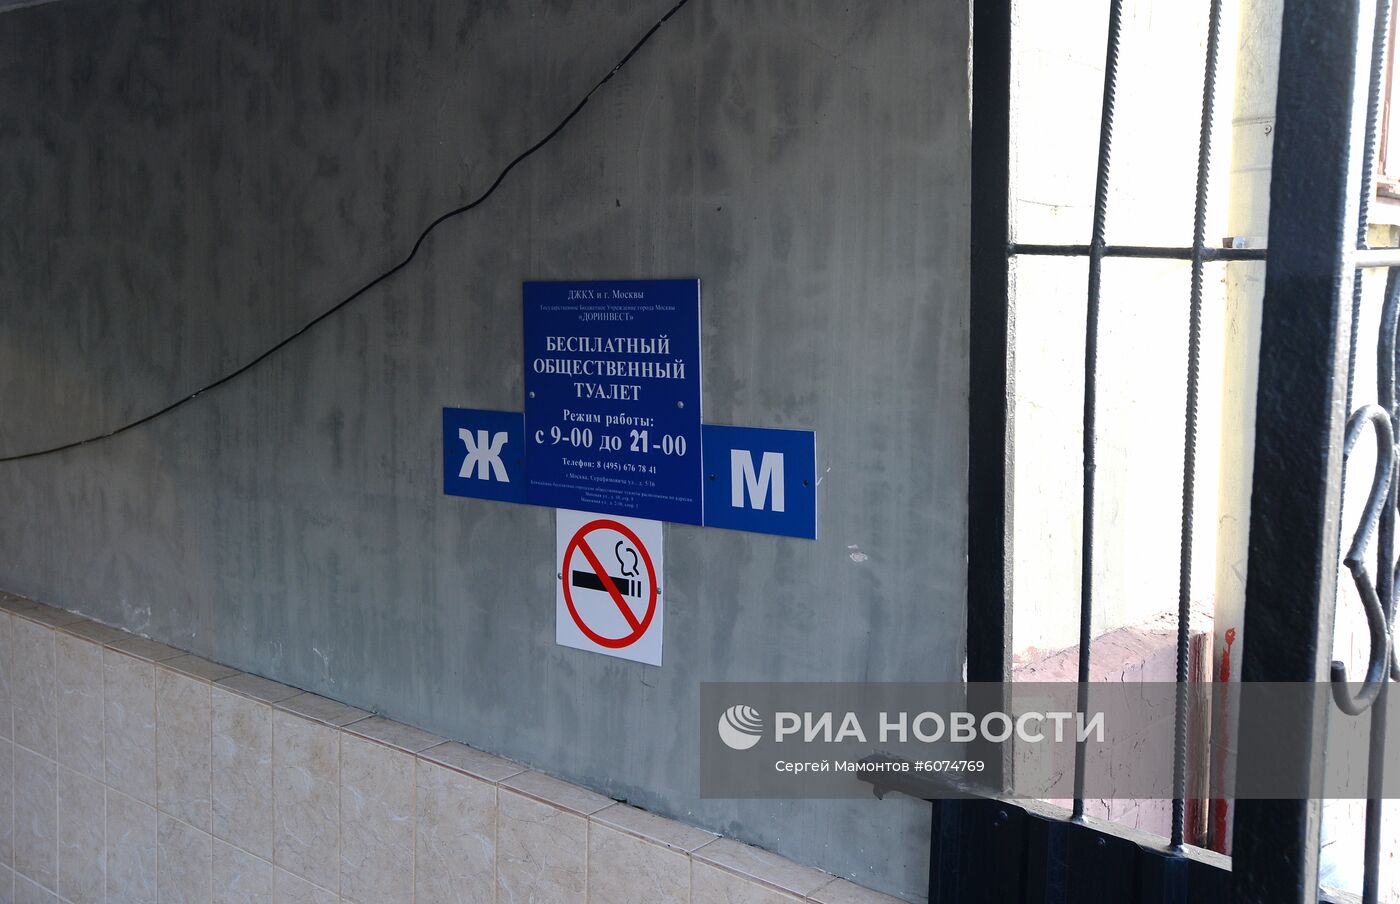 Общественные туалеты в Москве